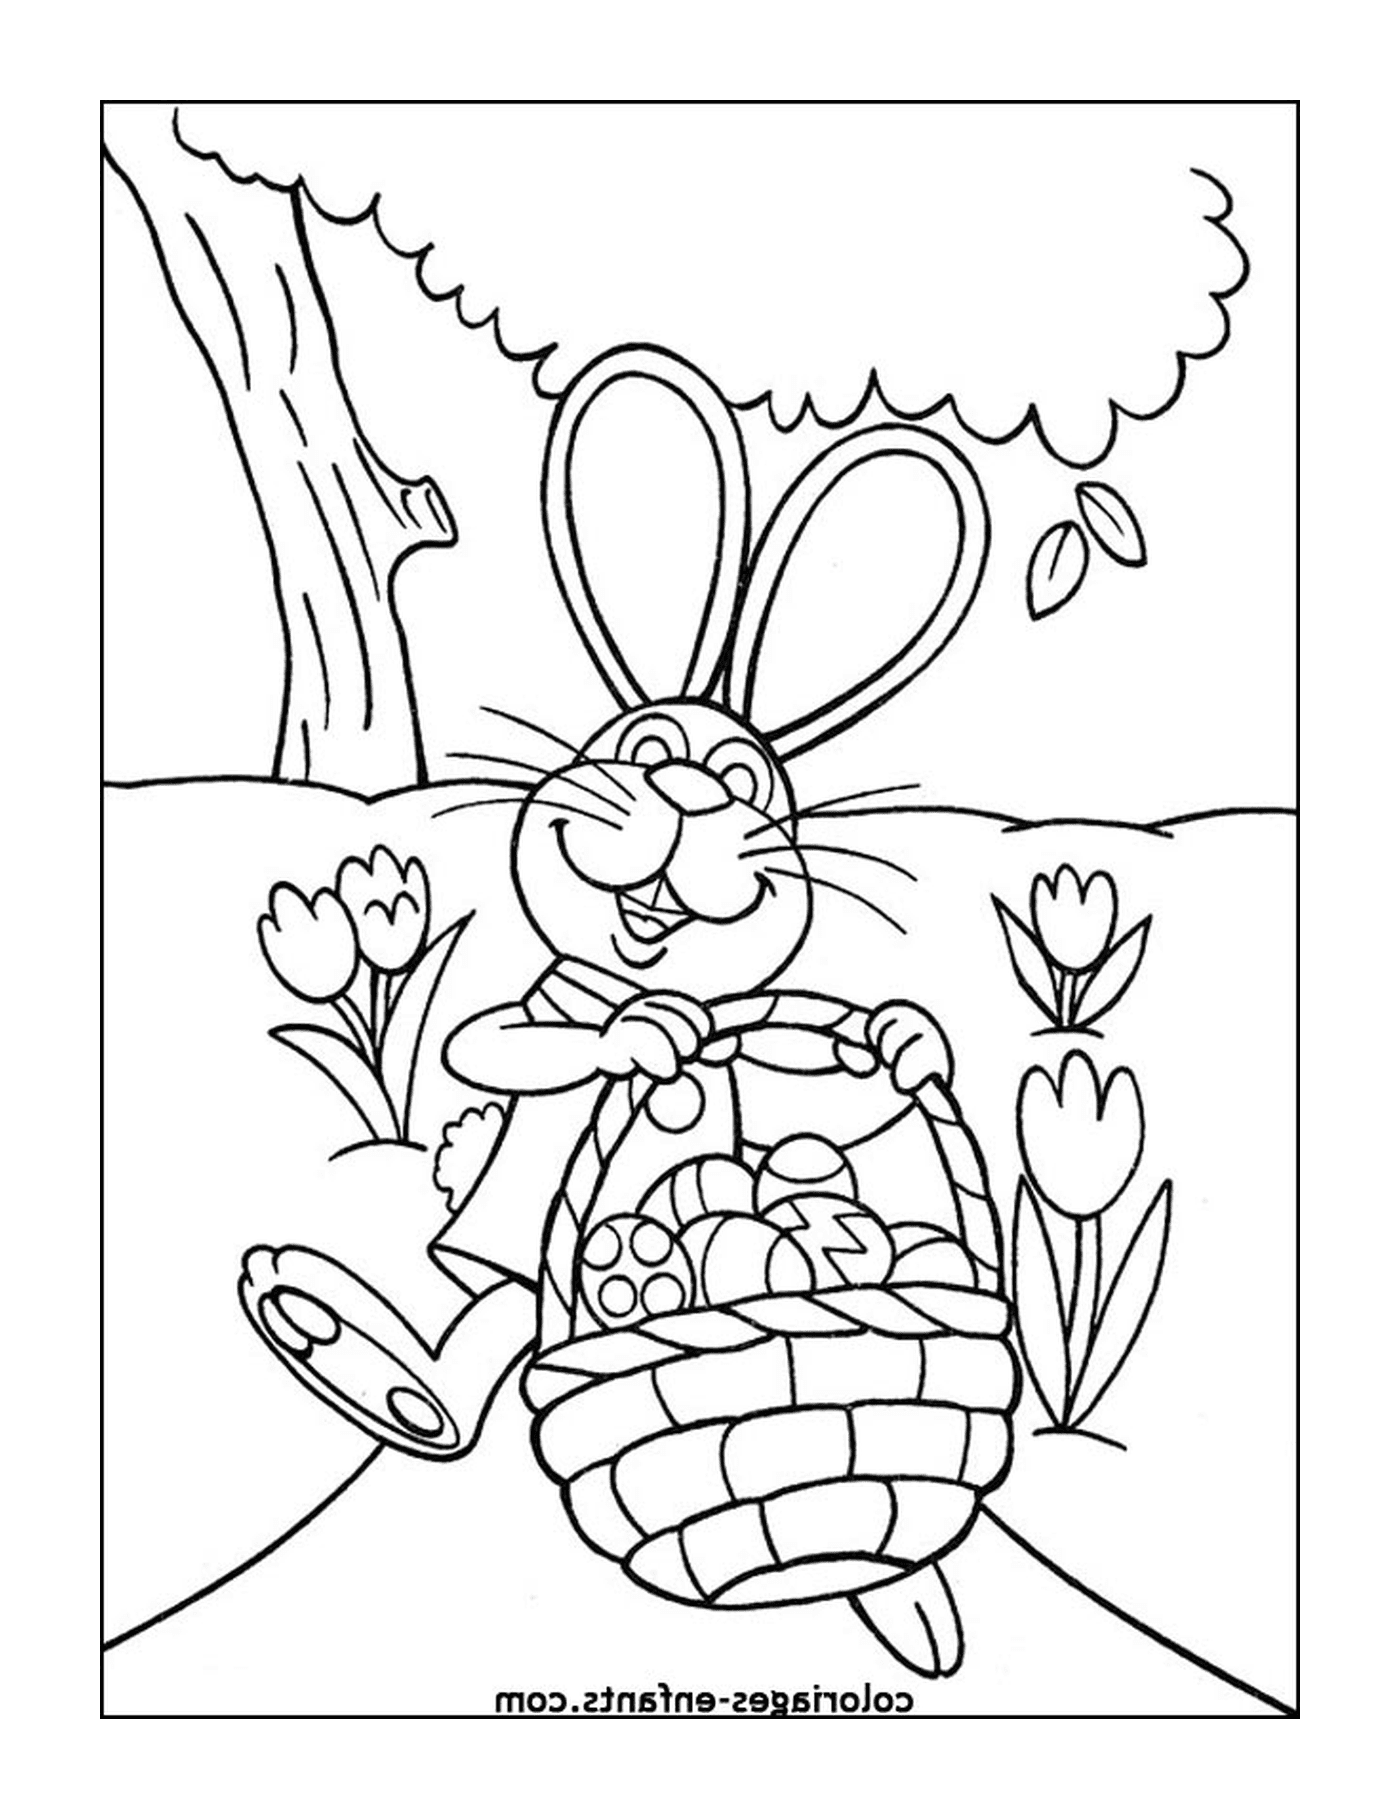  复活节兔子 满满一篮子鸡蛋 